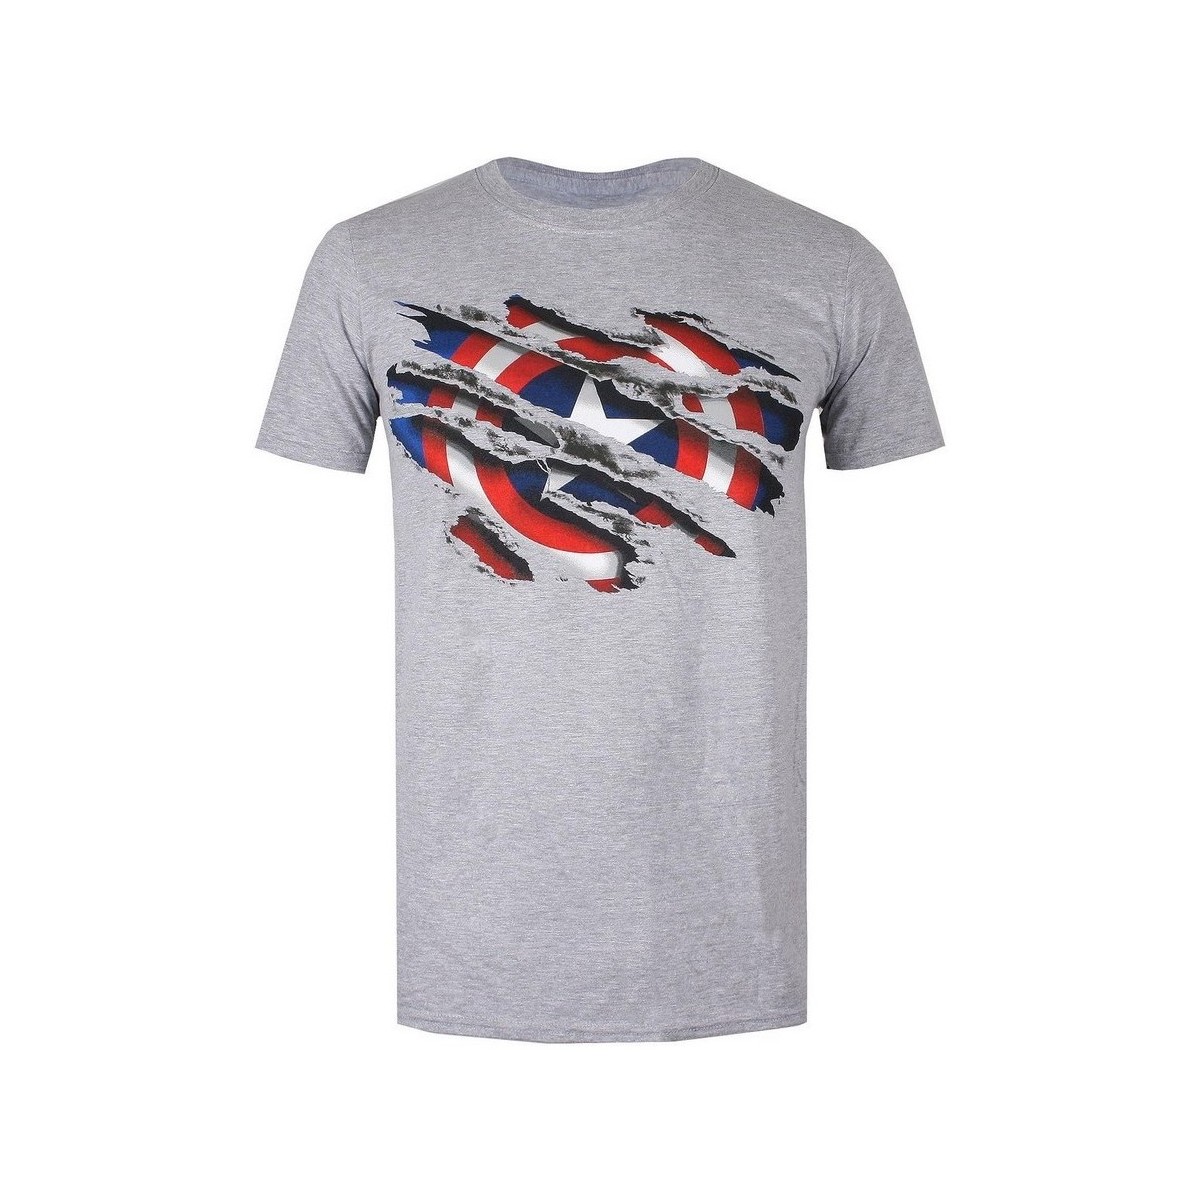 Vêtements Garçon T-shirts manches courtes Captain America TV462 Gris